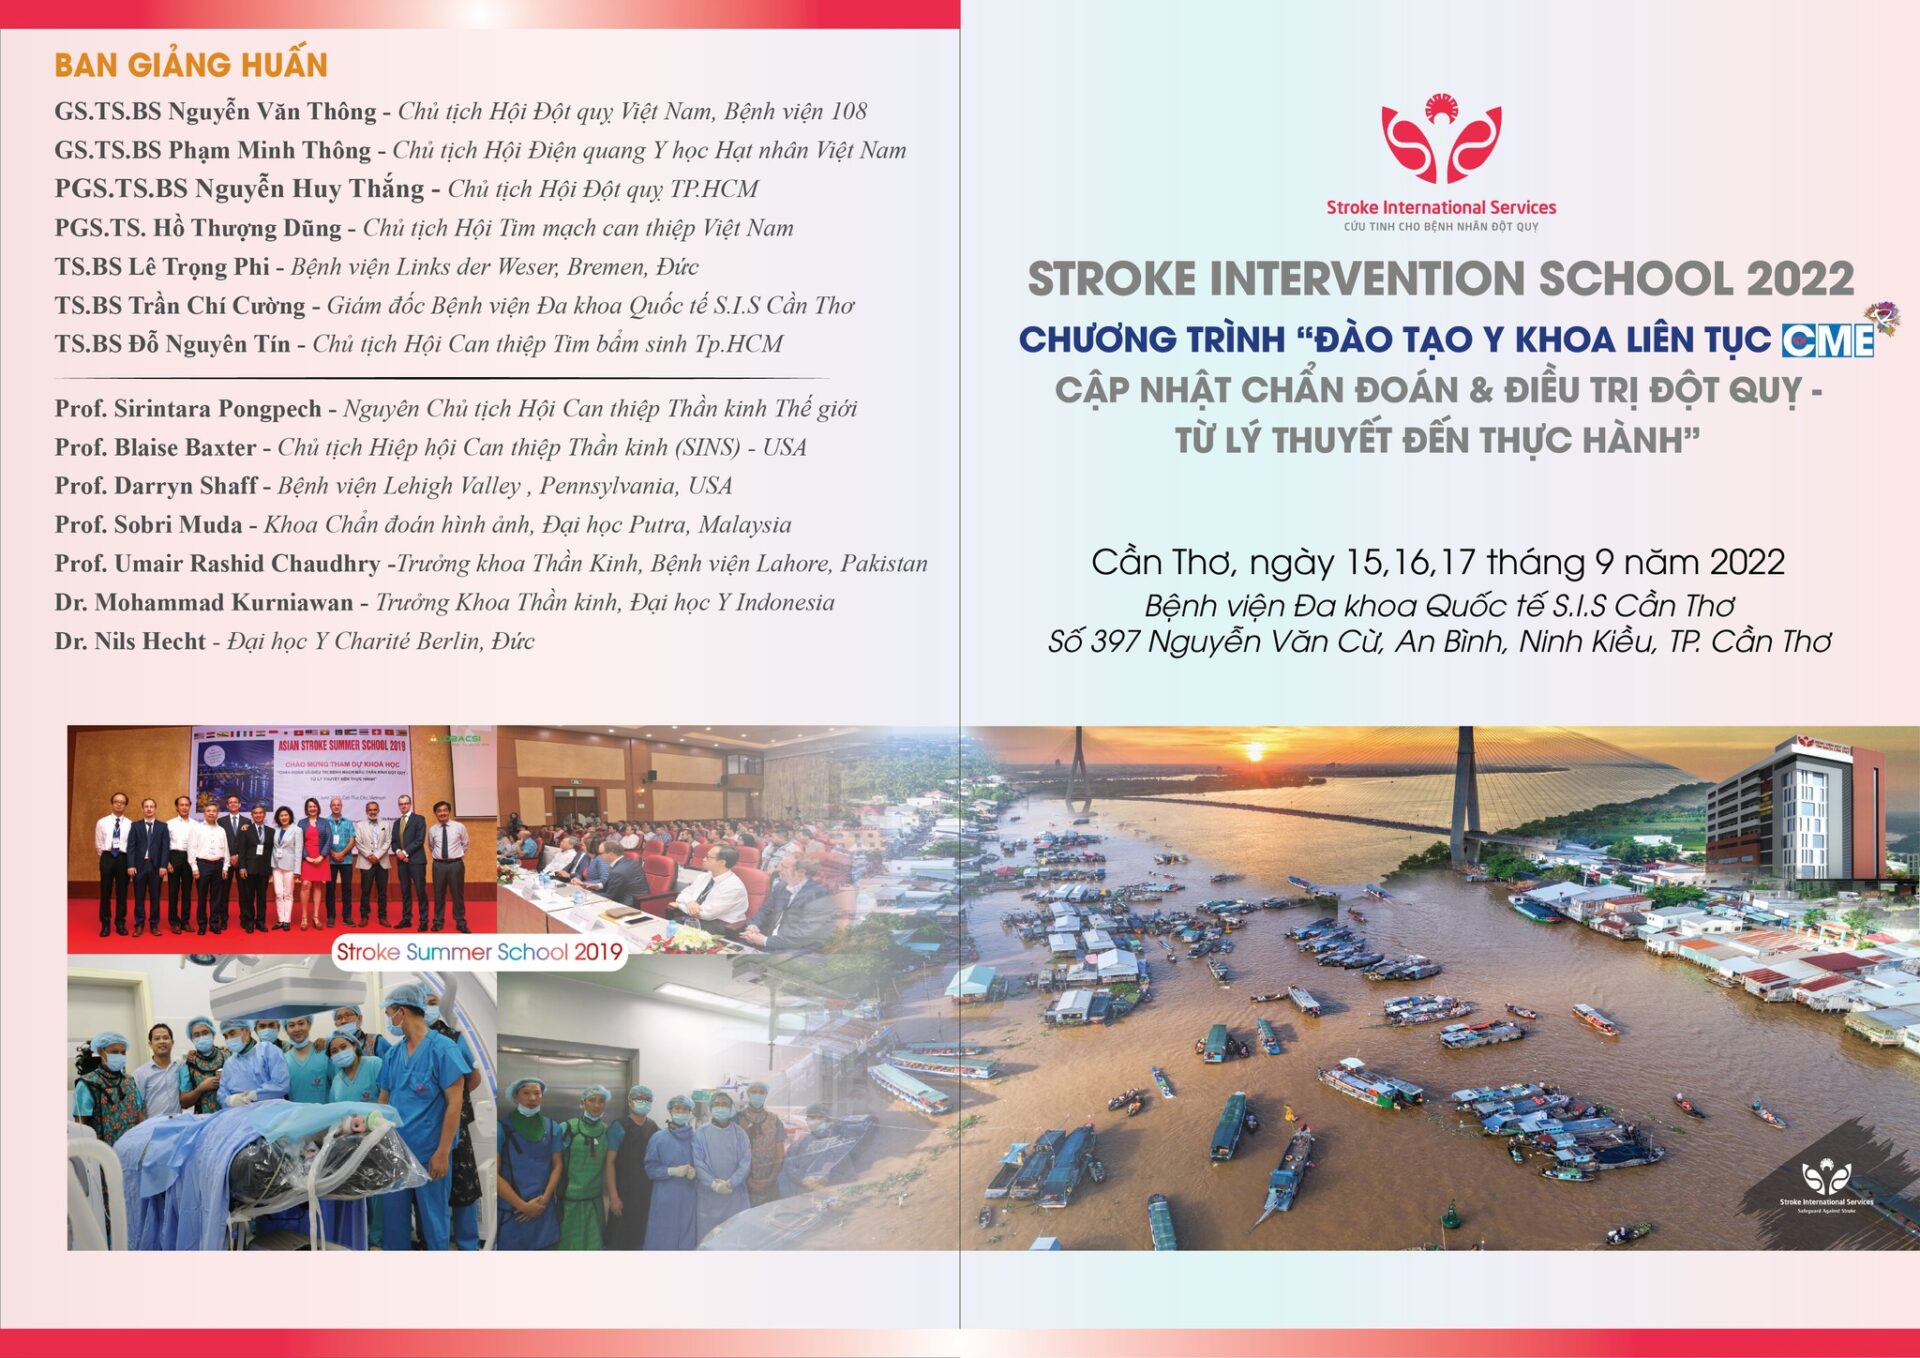 Chương trình “Đào tạo y khoa liên tục CME Cập nhật Chẩn đoán & điều trị Đột quỵ - Từ lý thuyết đến thực hành – Stroke Intervention School 2022” sẽ diễn ra từ ngày 15-17 tháng 9 năm 2022 tại Cần Thơ.